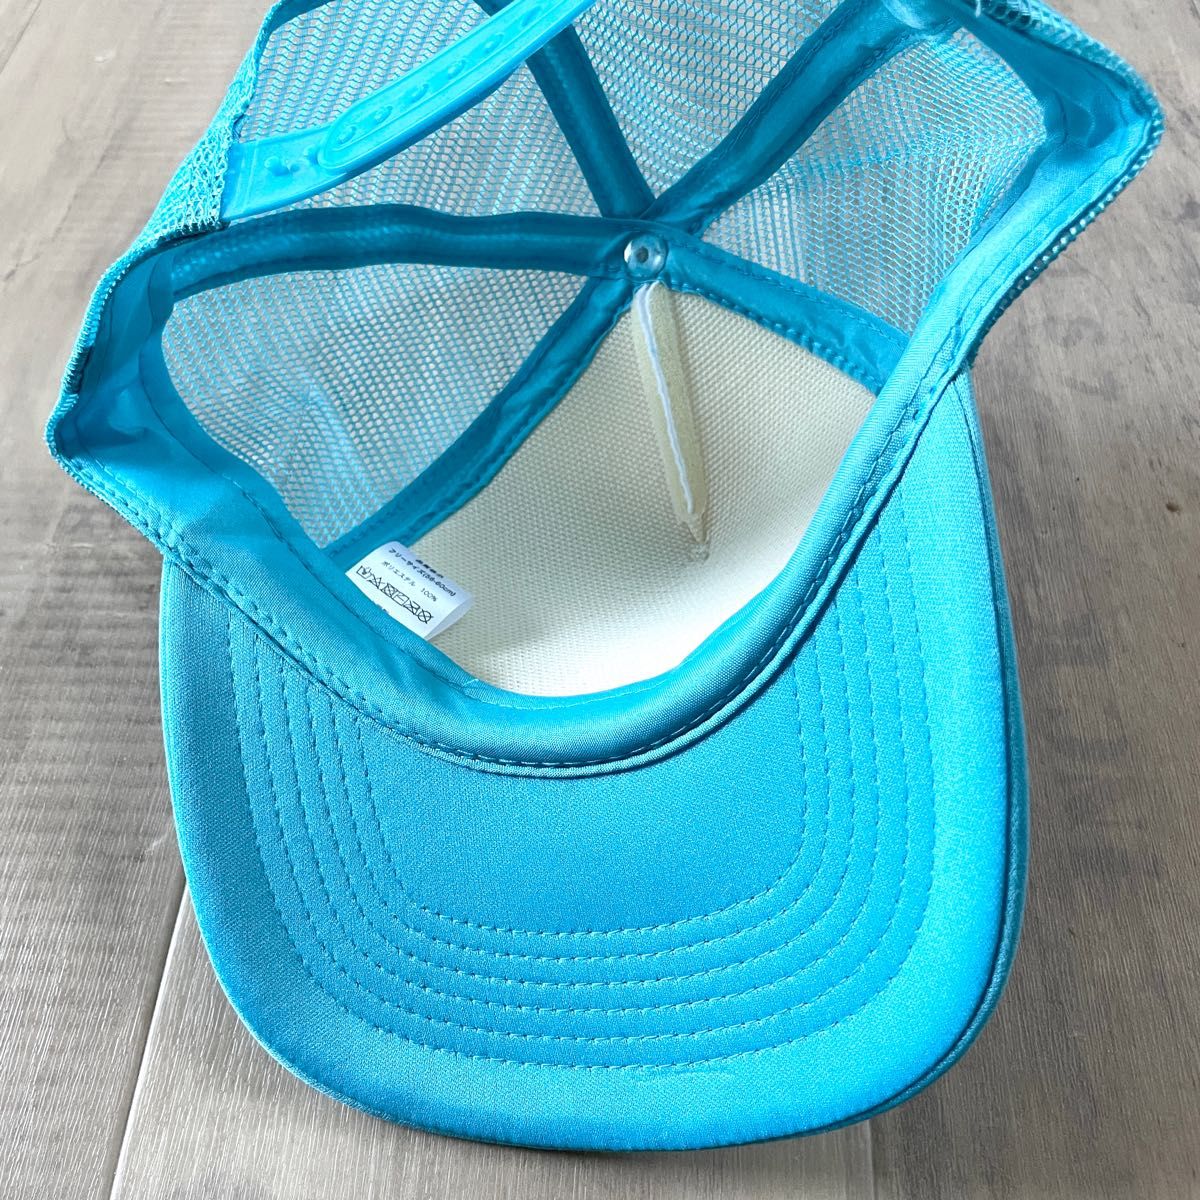 【東京五輪オリンピック2020】メッシュキャップ 帽子 スポーツ カジュアル 記念 コレクション 白×水色 フリーサイズ